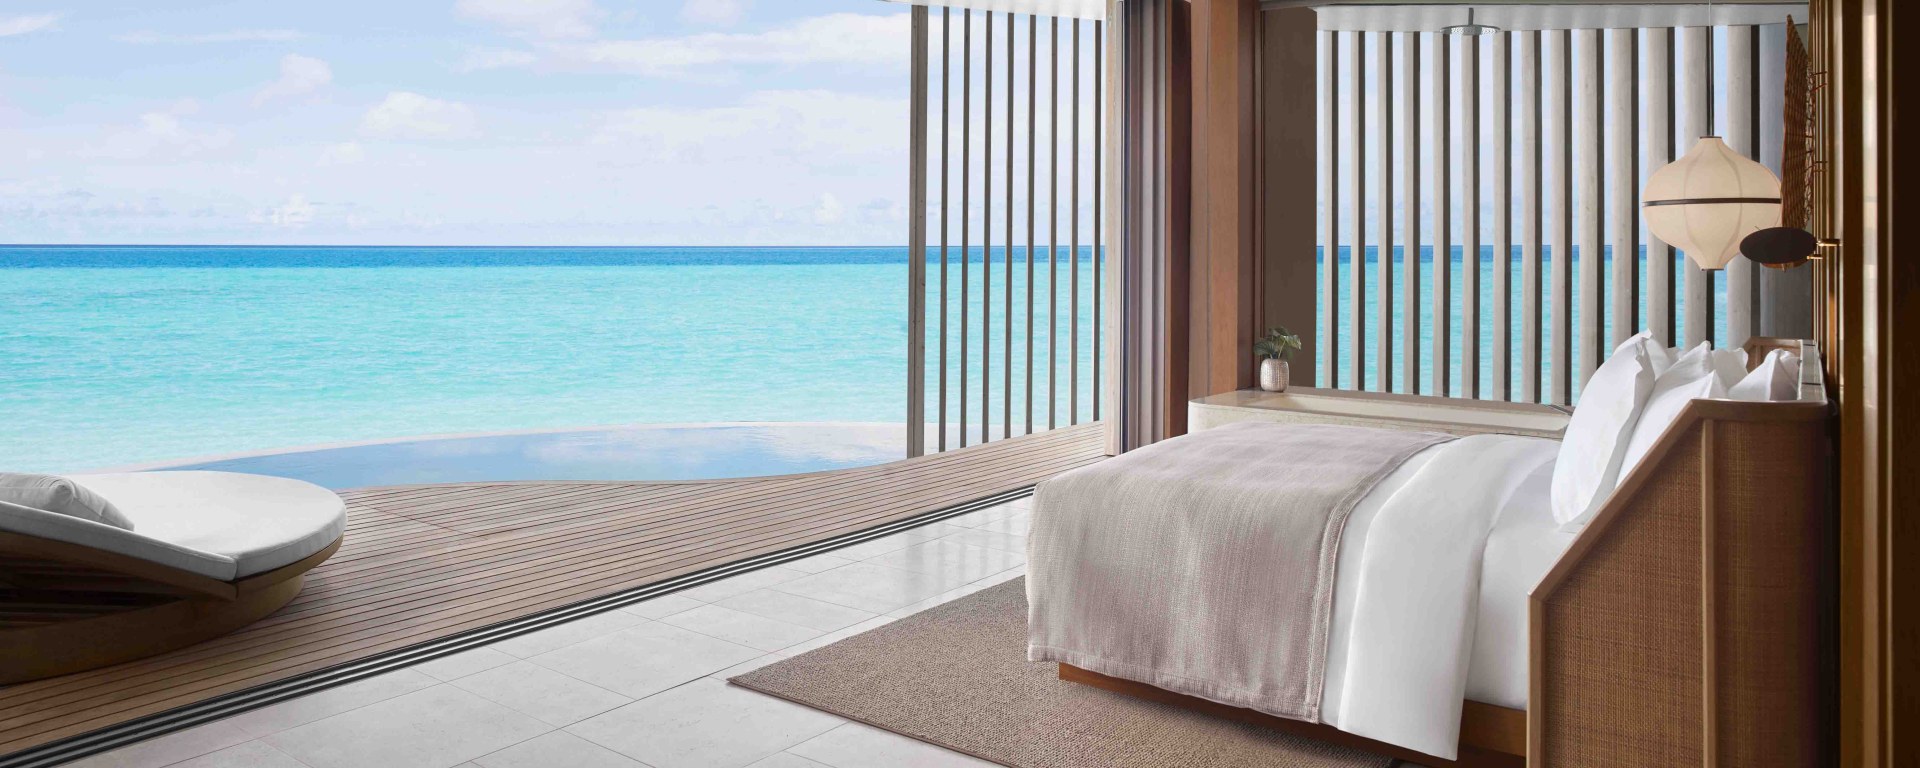 Luxushotel Malediven - The Ritz Carlton Maldives Fari Islands